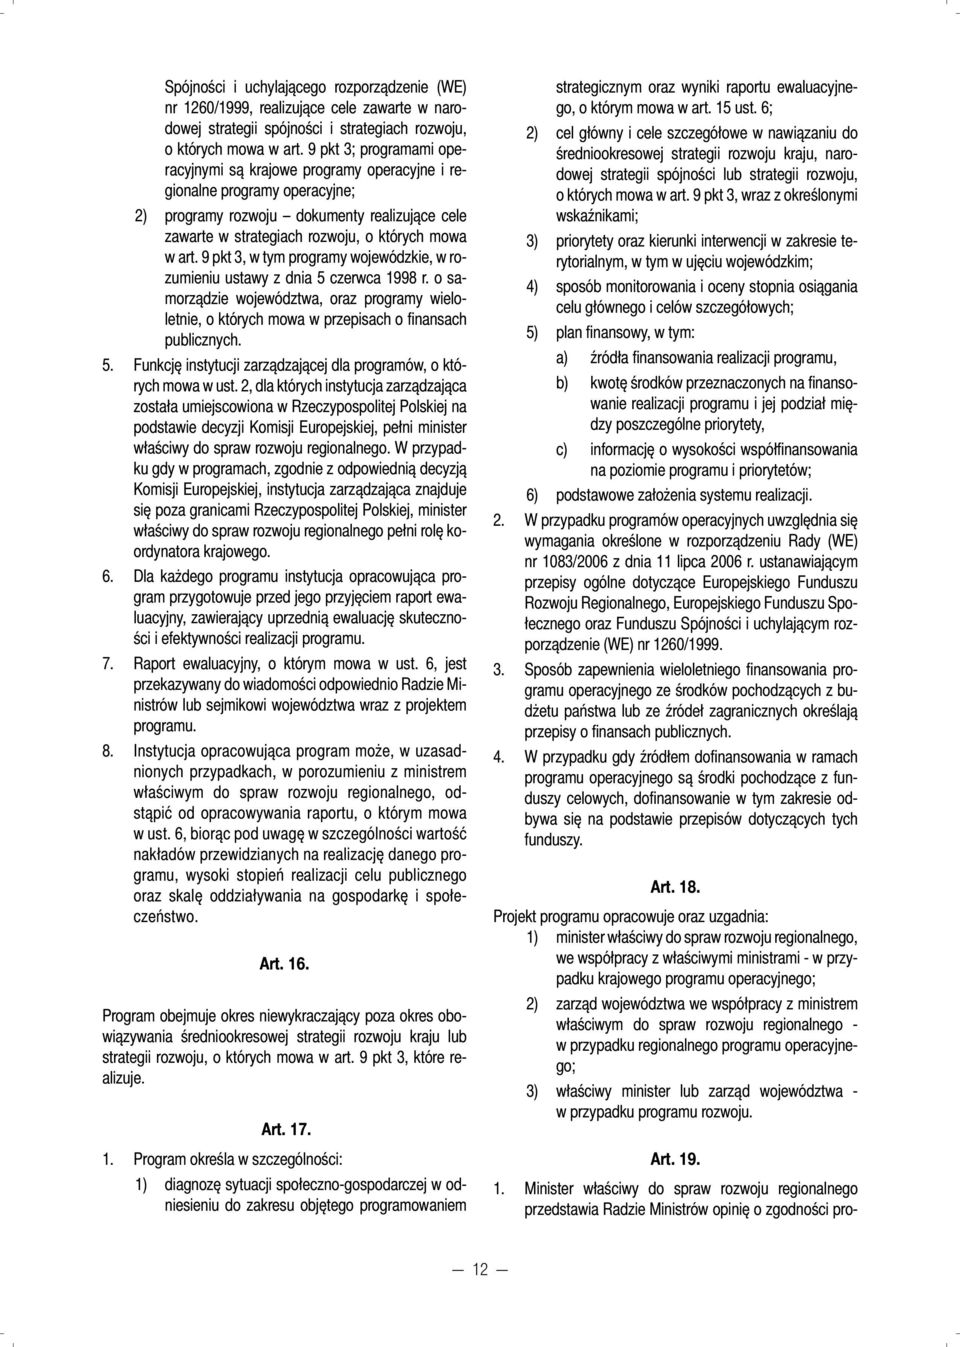 9 pkt 3, w tym programy wojewódzkie, w rozumieniu ustawy z dnia 5 czerwca 1998 r. o samorządzie województwa, oraz programy wieloletnie, o których mowa w przepisach o fi nansach publicznych. 5. Funkcję instytucji zarządzającej dla programów, o których mowa w ust.